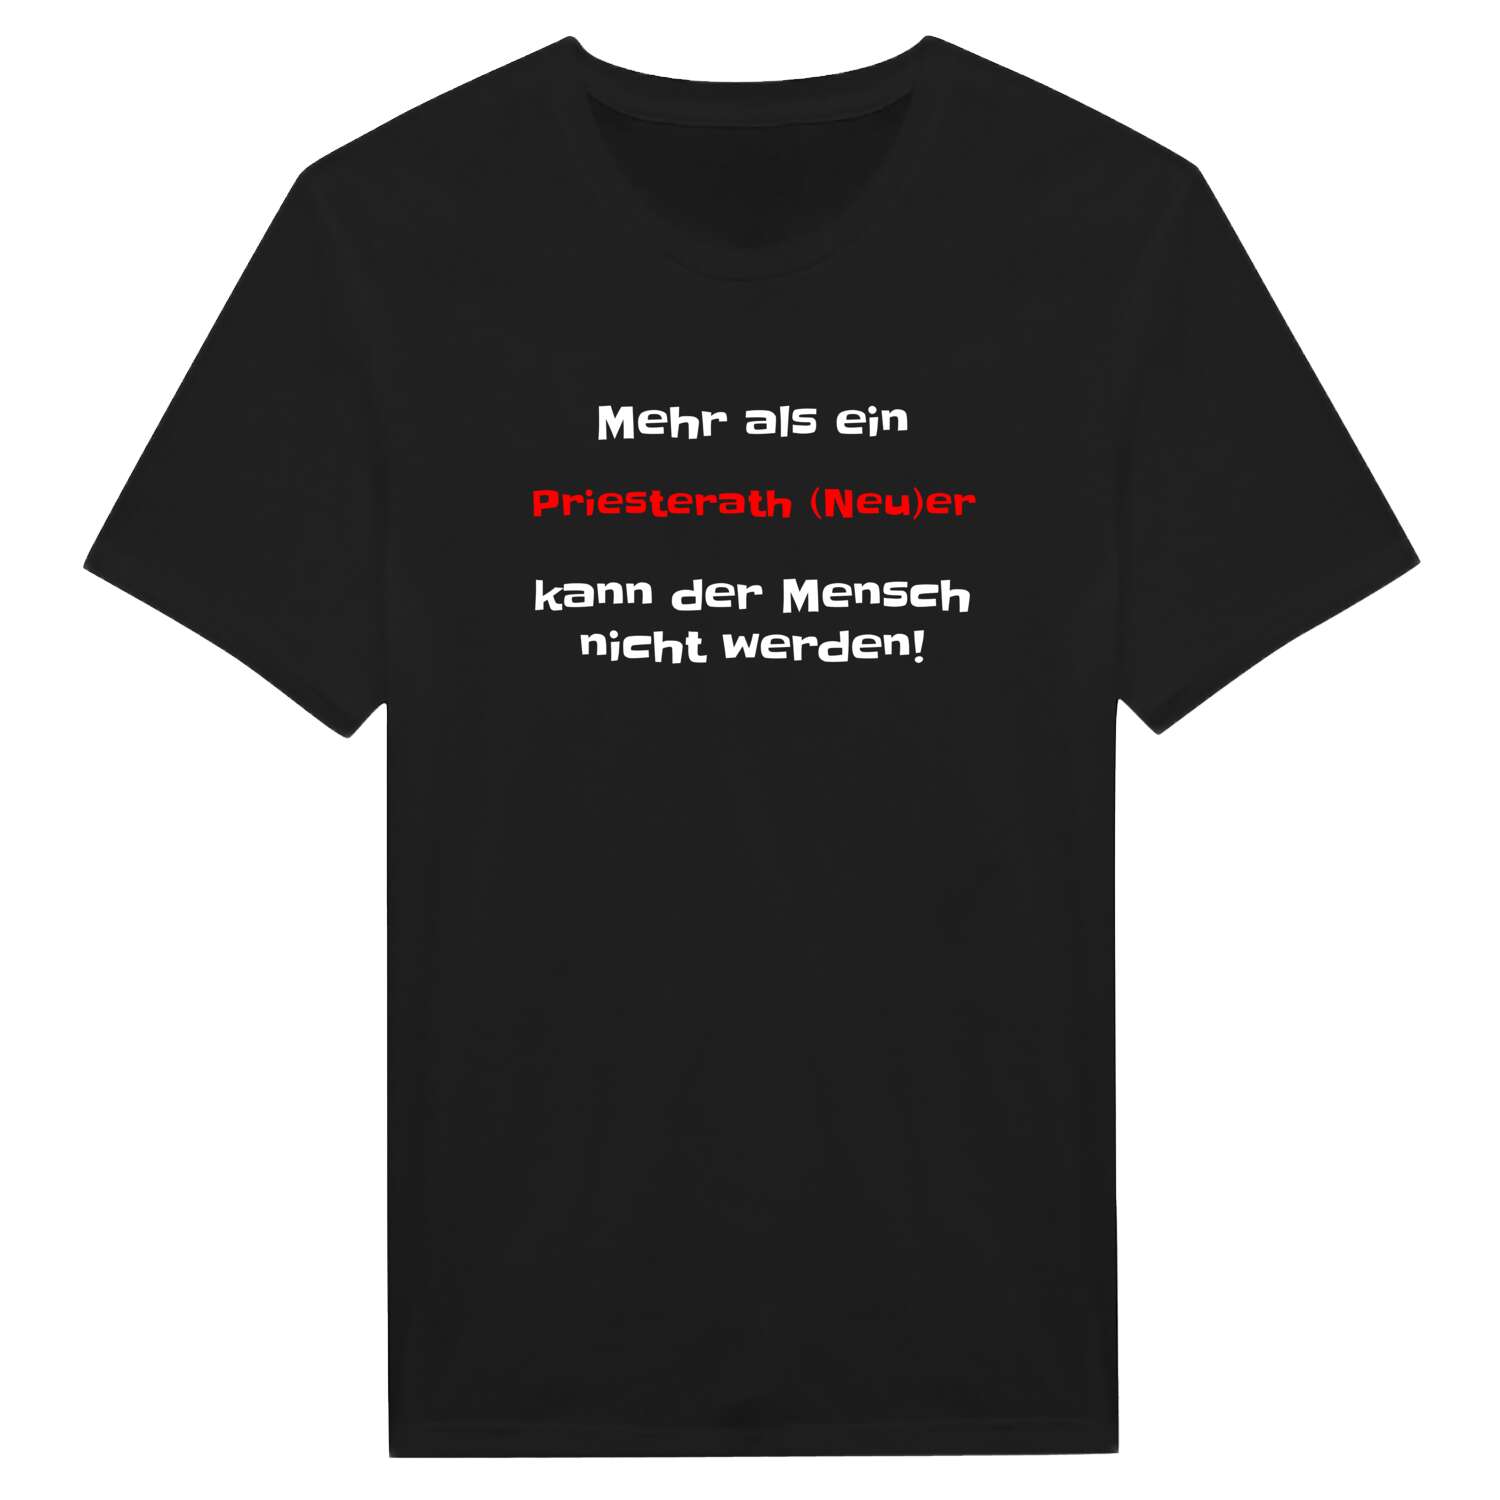 Priesterath (Neu) T-Shirt »Mehr als ein«